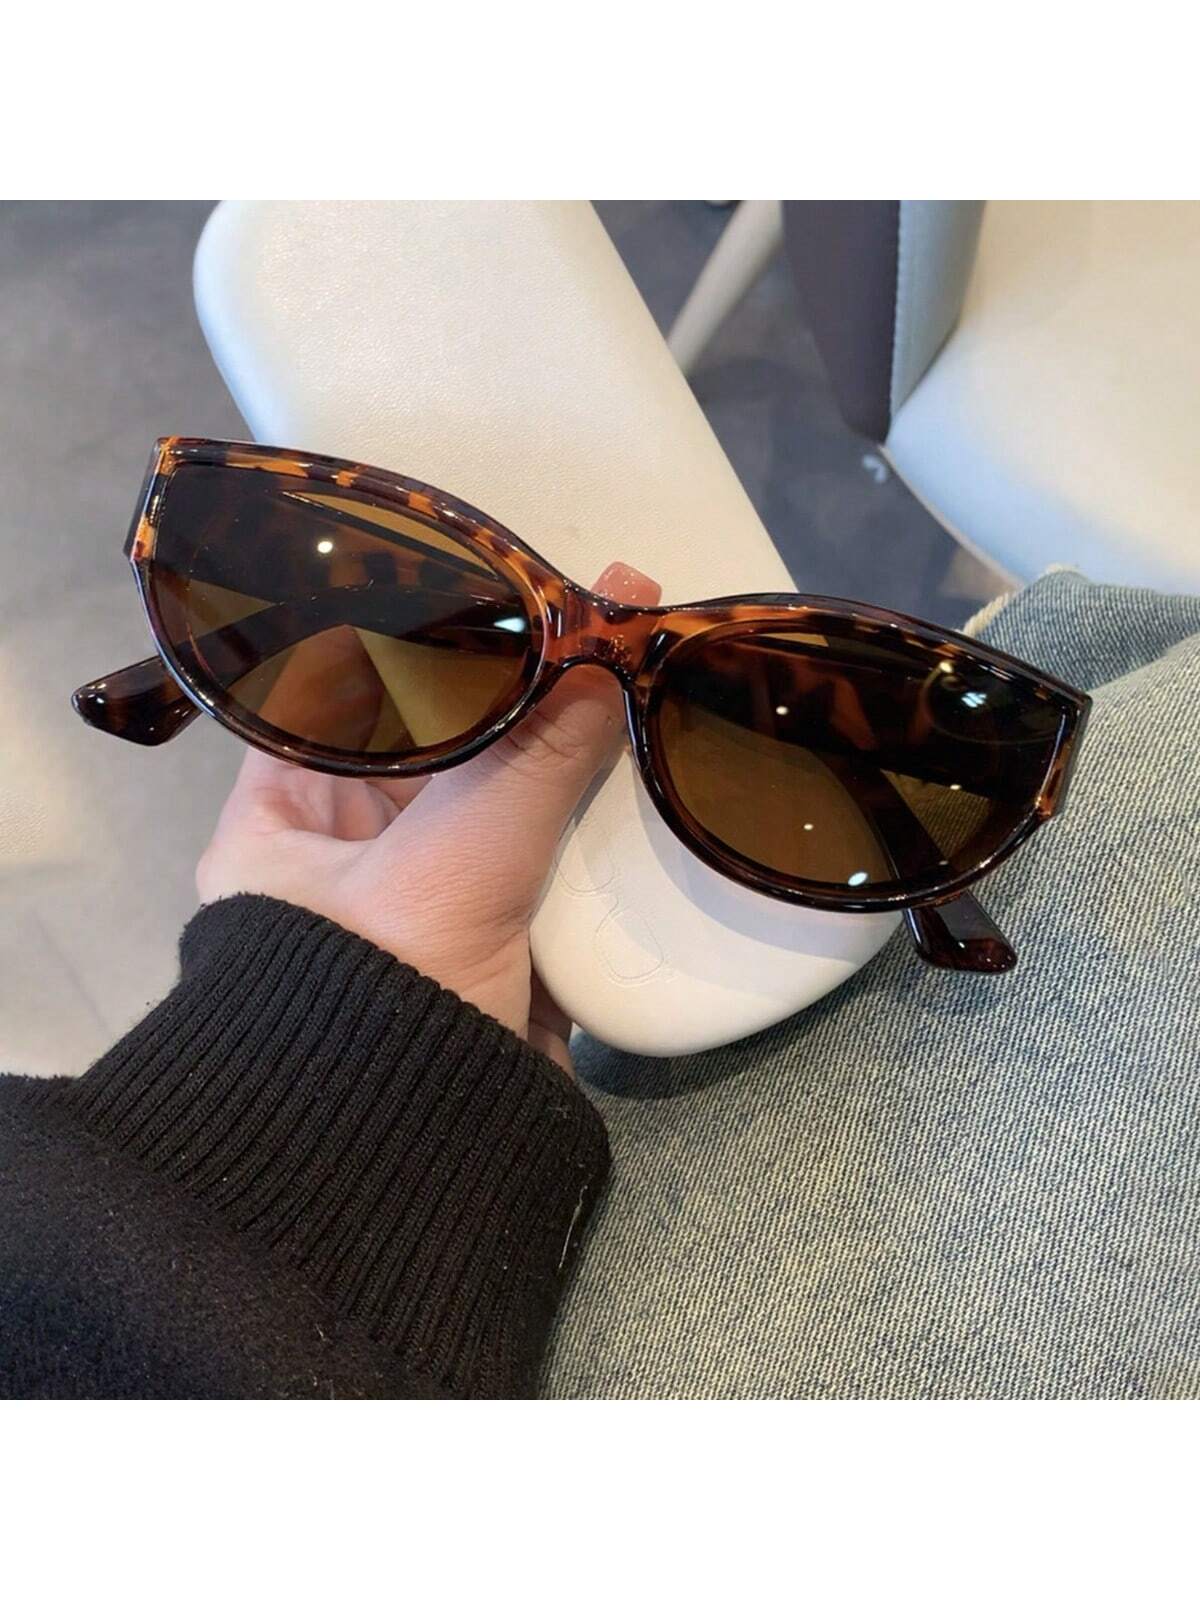 1шт винтажный стиль кошачий глаз индивидуальные солнцезащитные очки с леопардовым принтом ретро шикарные оттенки 50 шт бумажные украшения в винтажном стиле